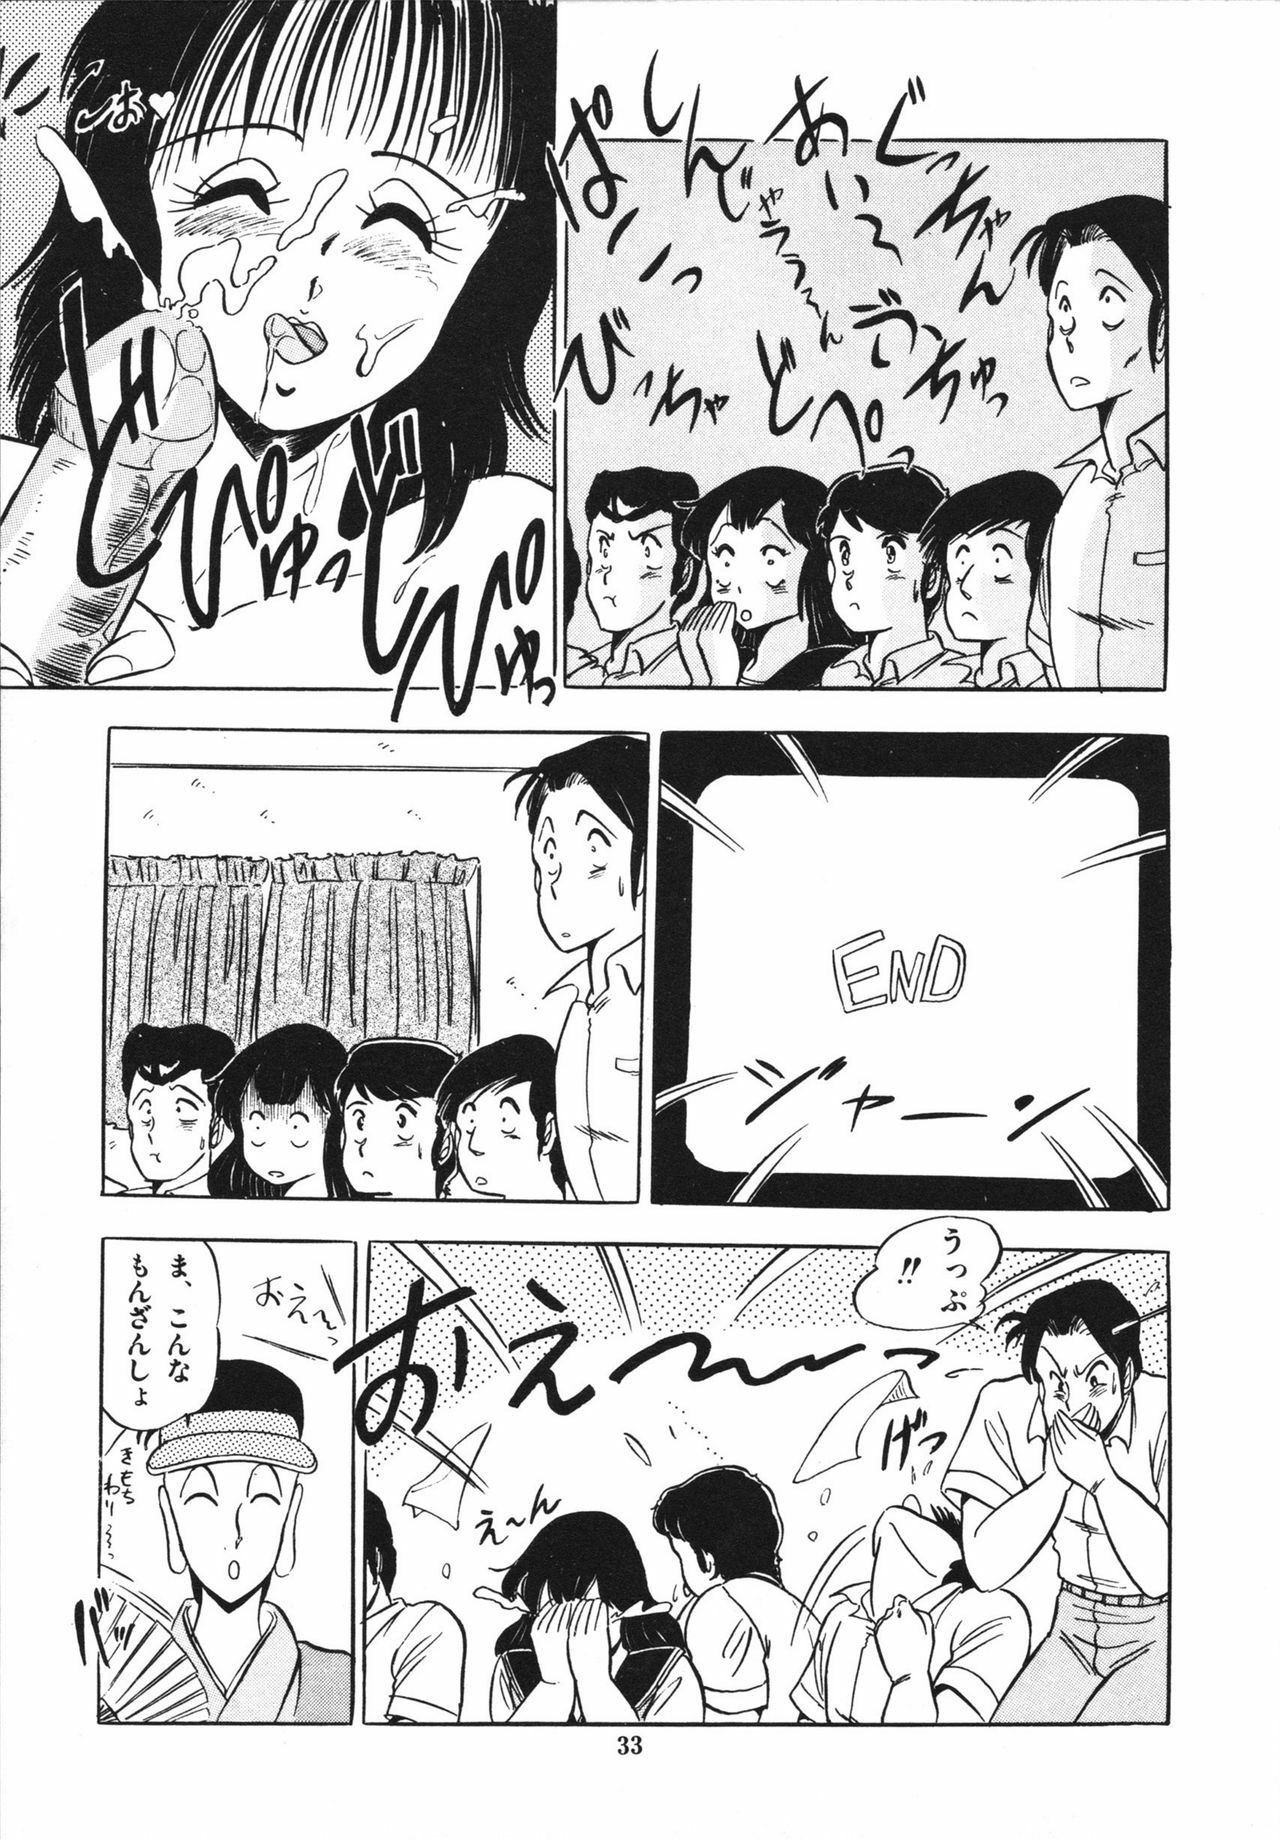 [Giyugun] Eiken no Koshinakakun 1 page 37 full